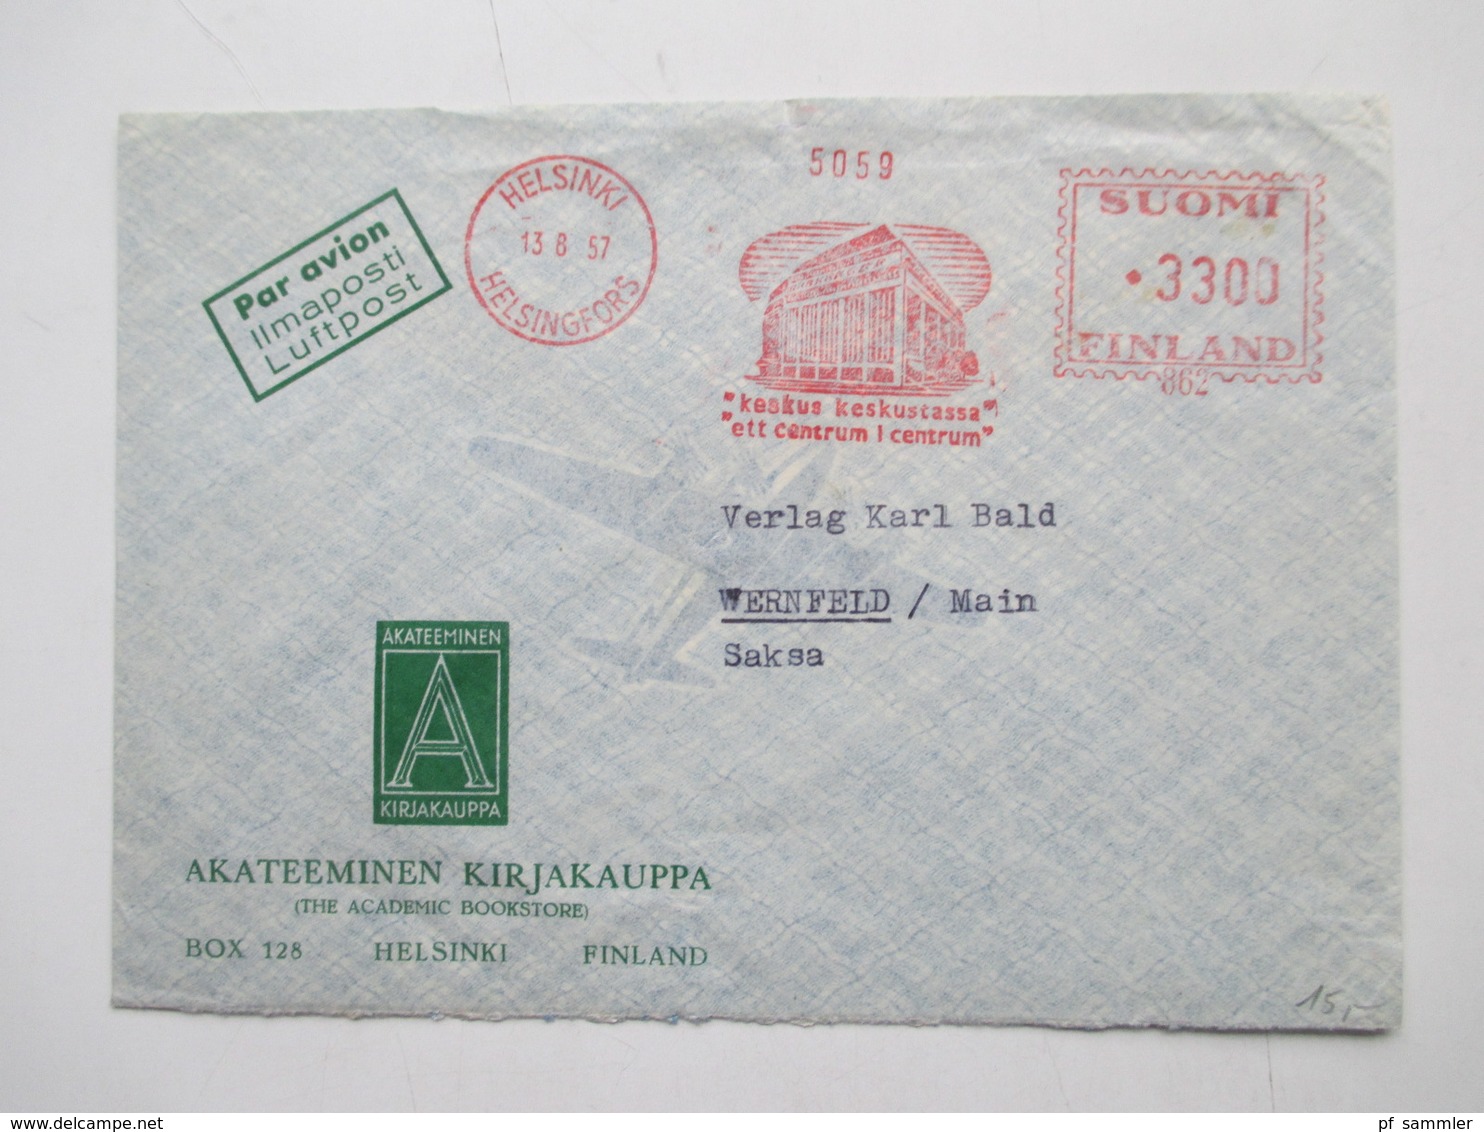 Finnland 1954 - 72 Luftpost Briefe 12 Stk. Firmen Korrespondenz alles Freistempel Helsinki interessanter Posten!